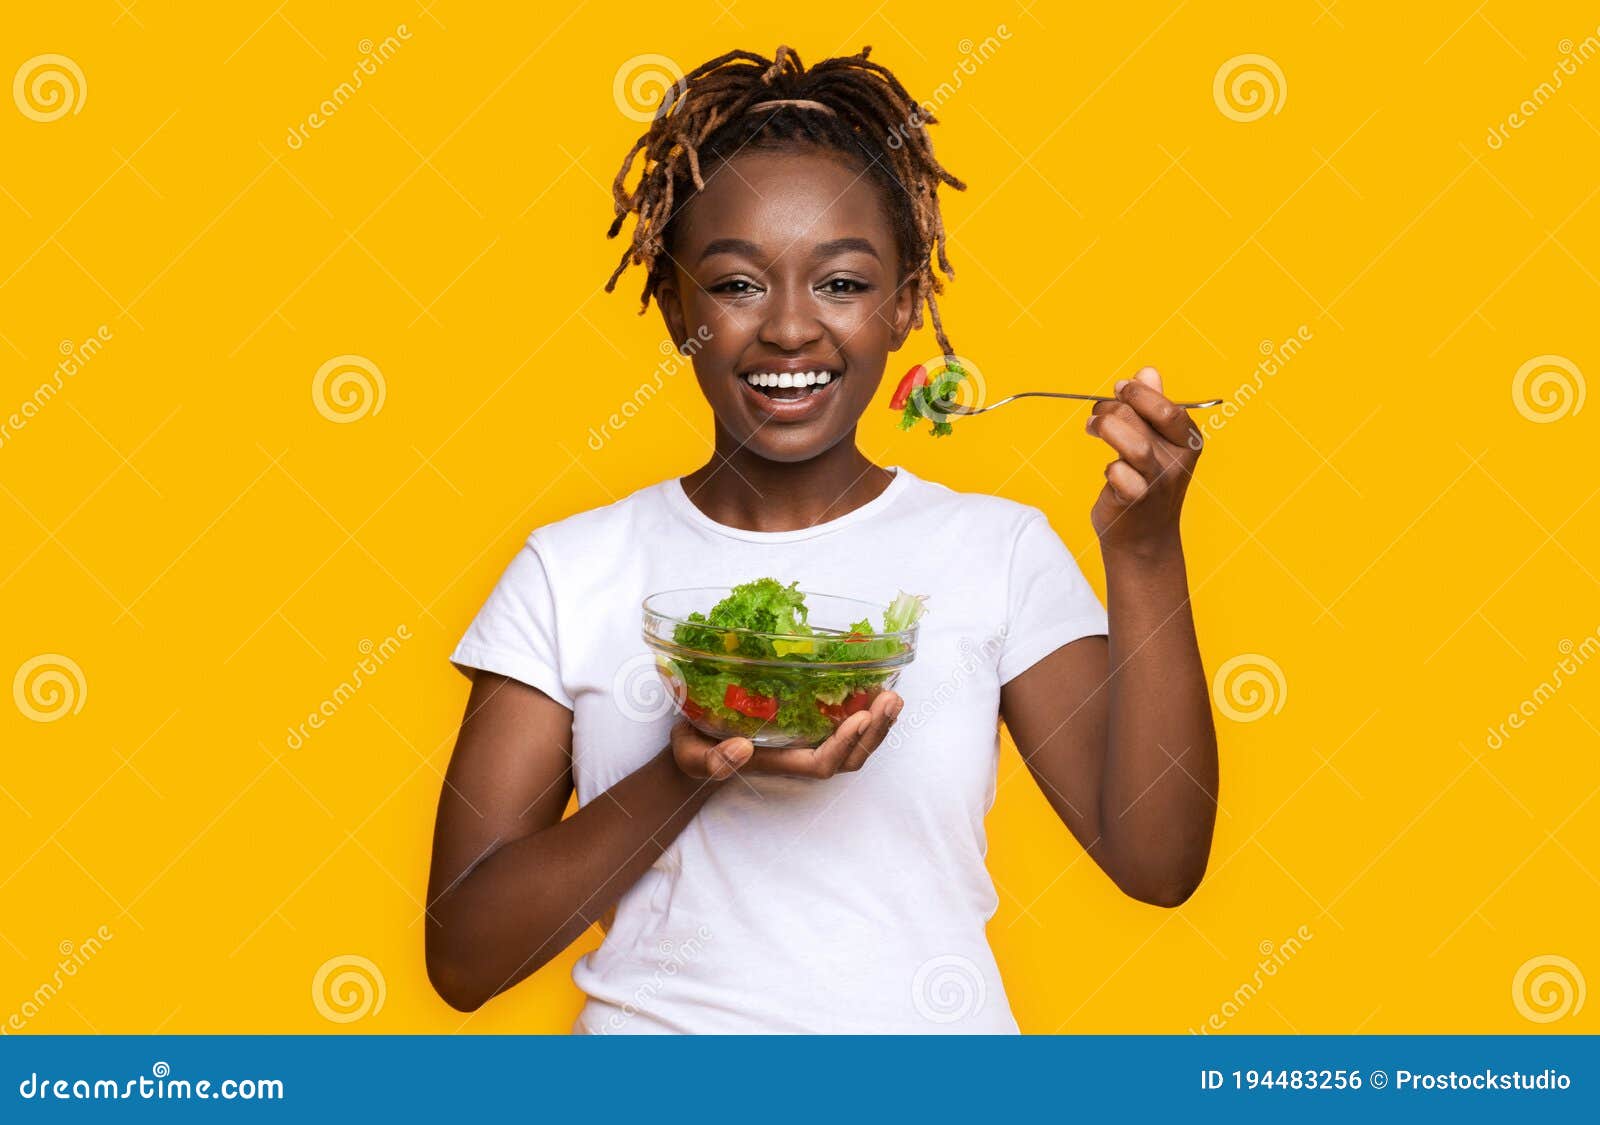 black girls eating goo